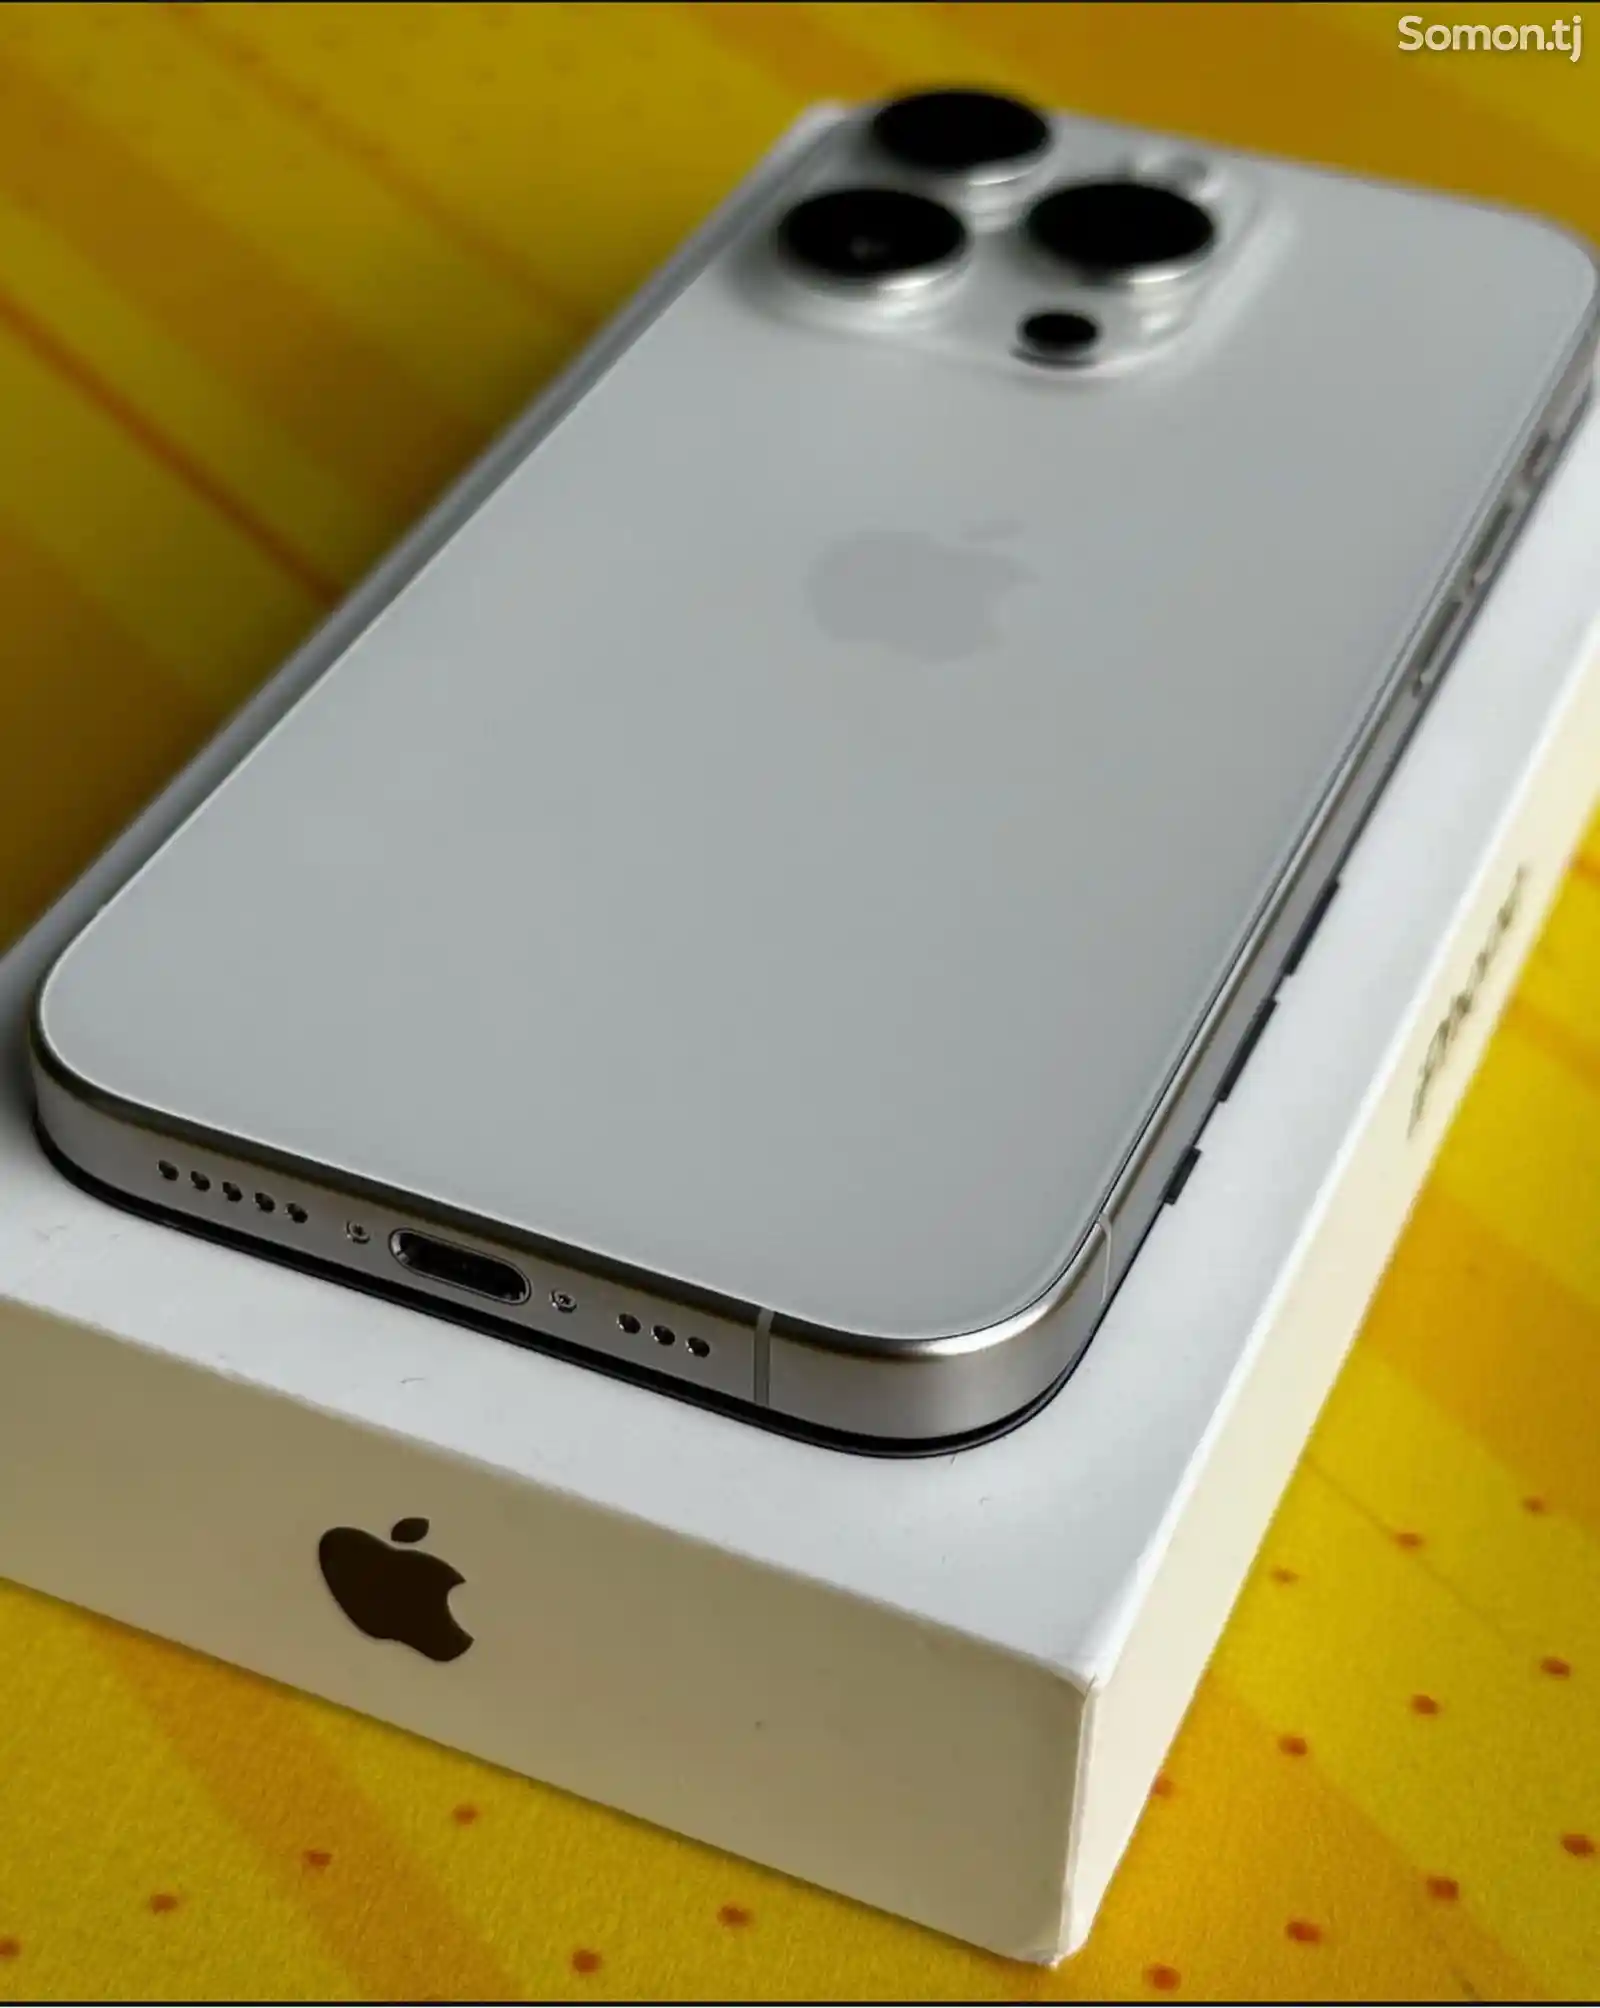 Apple iPhone 15 Pro Max, 256 gb, White Titanium-3